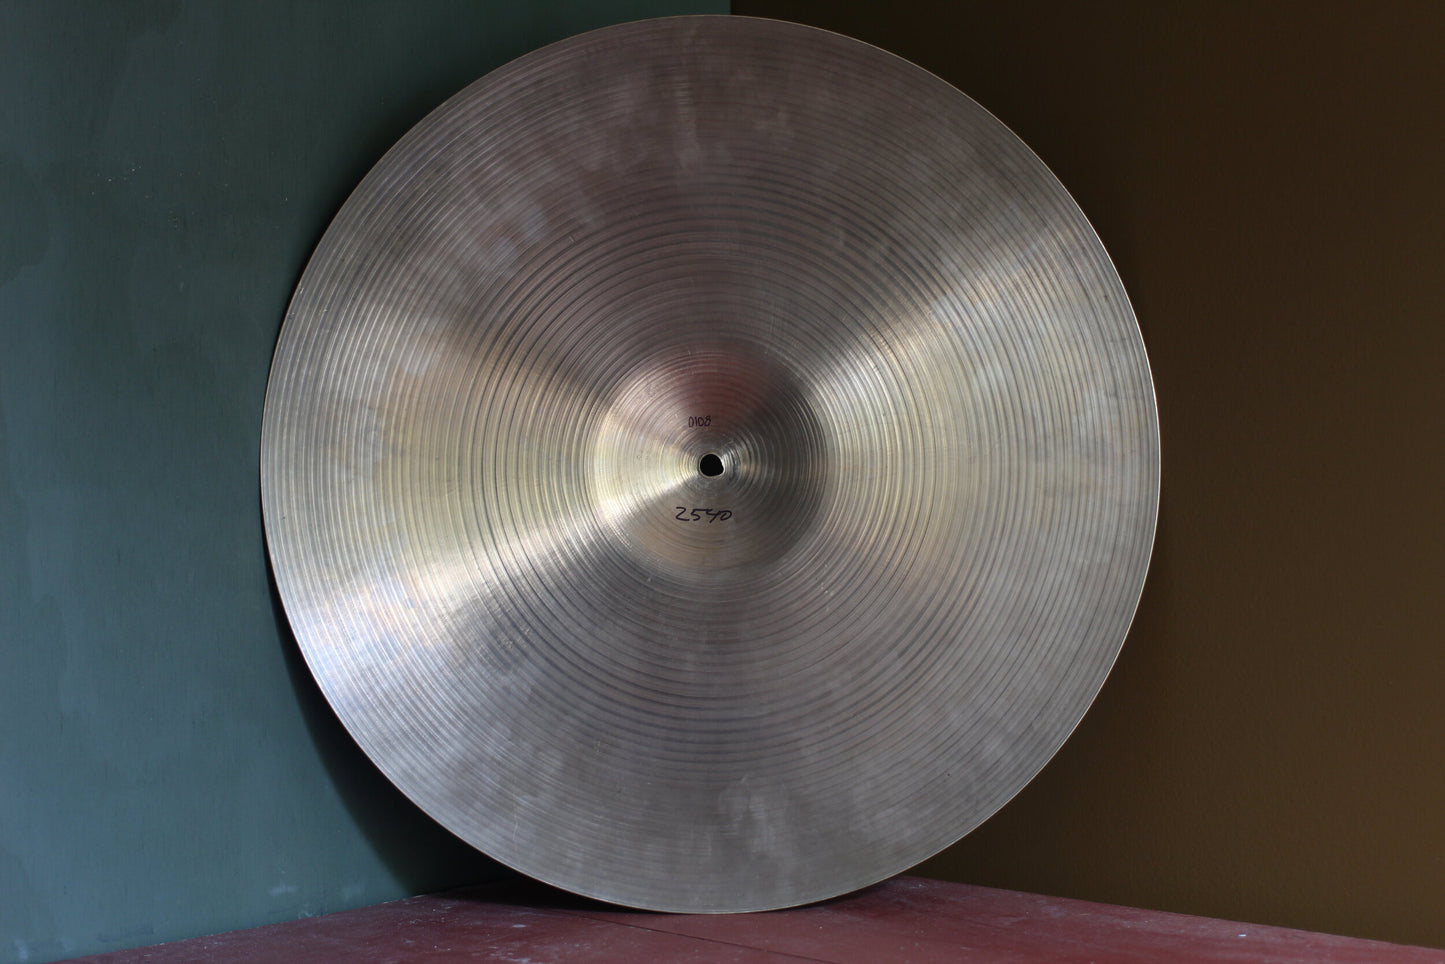 1960s A Zildjian 20" Ride Cymbal 2540g